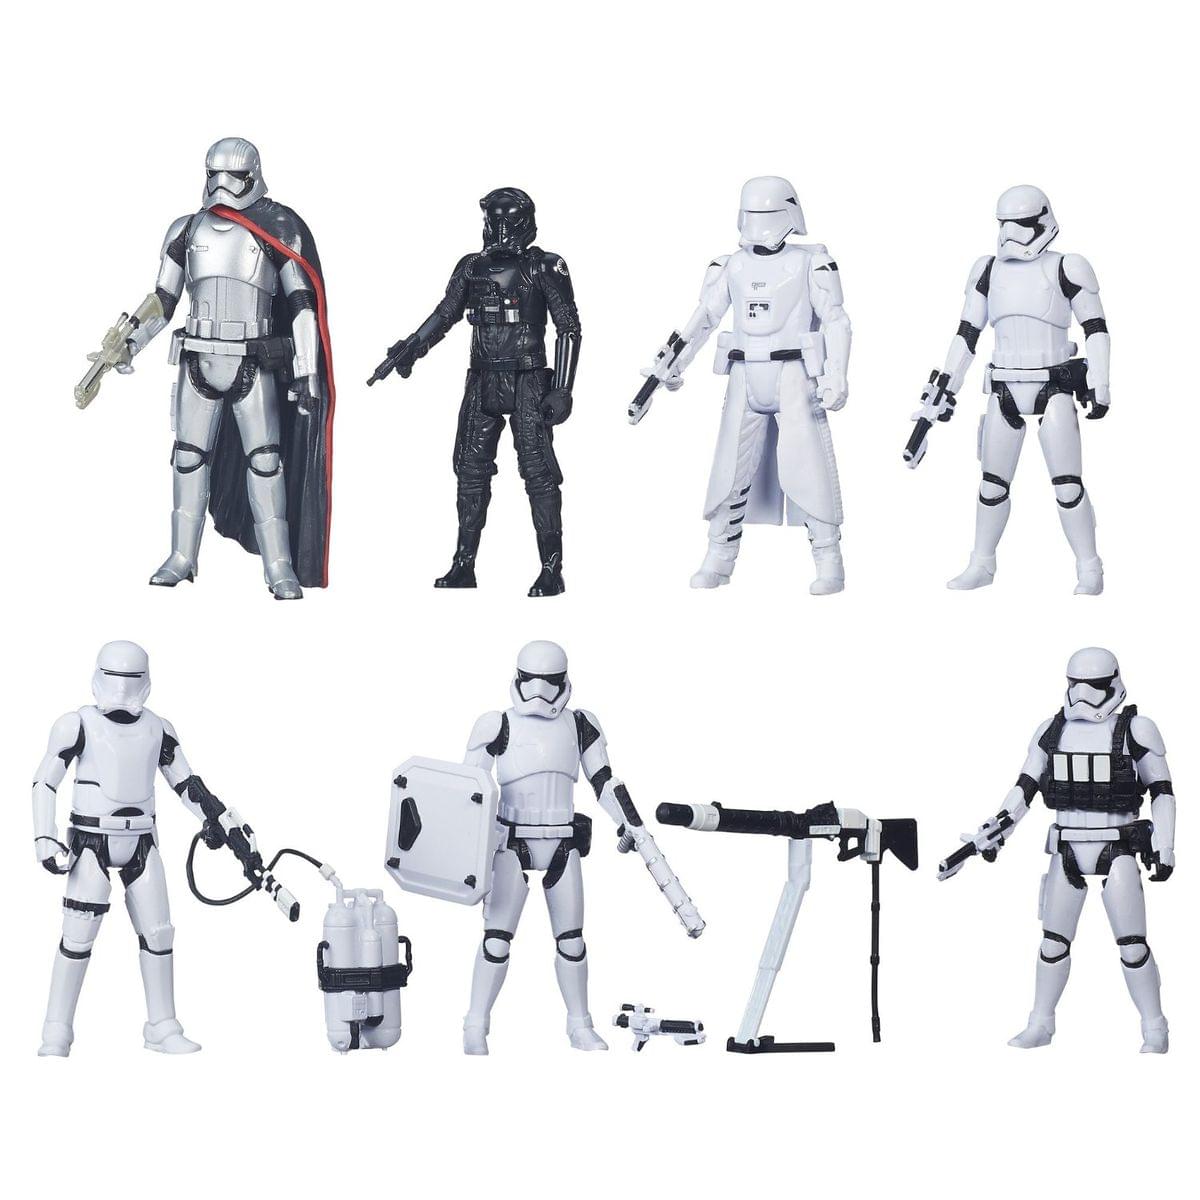 Star Wars The Force Awakens 3.75" Figure Troop Builder 7-Pack